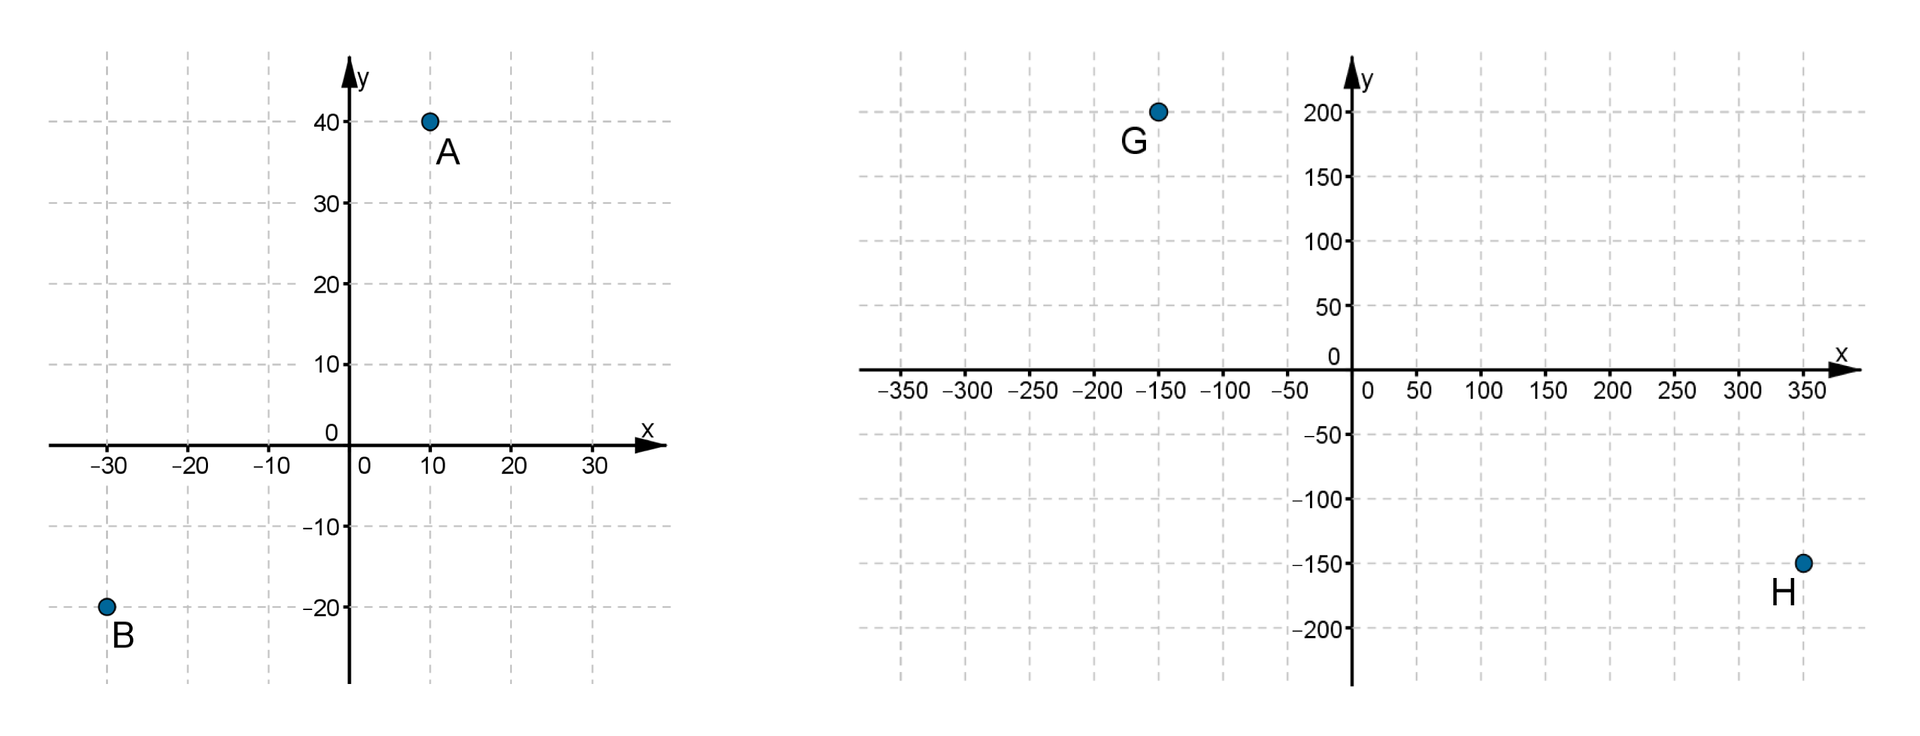 Rysunki dwóch układów współrzędnych: Na pierwszy układzie współrzędnych odcinek jednostkowy na osi OX i osi OY równa się 10. Zaznaczone punkty: A =(10, 40), B =(-30, -20). Na drugim układzie współrzędnym odcinek jednostkowy na osi OX i osi OY równa się 50. Zaznaczone punkty: G =(-150, 200), H =(350, -150).